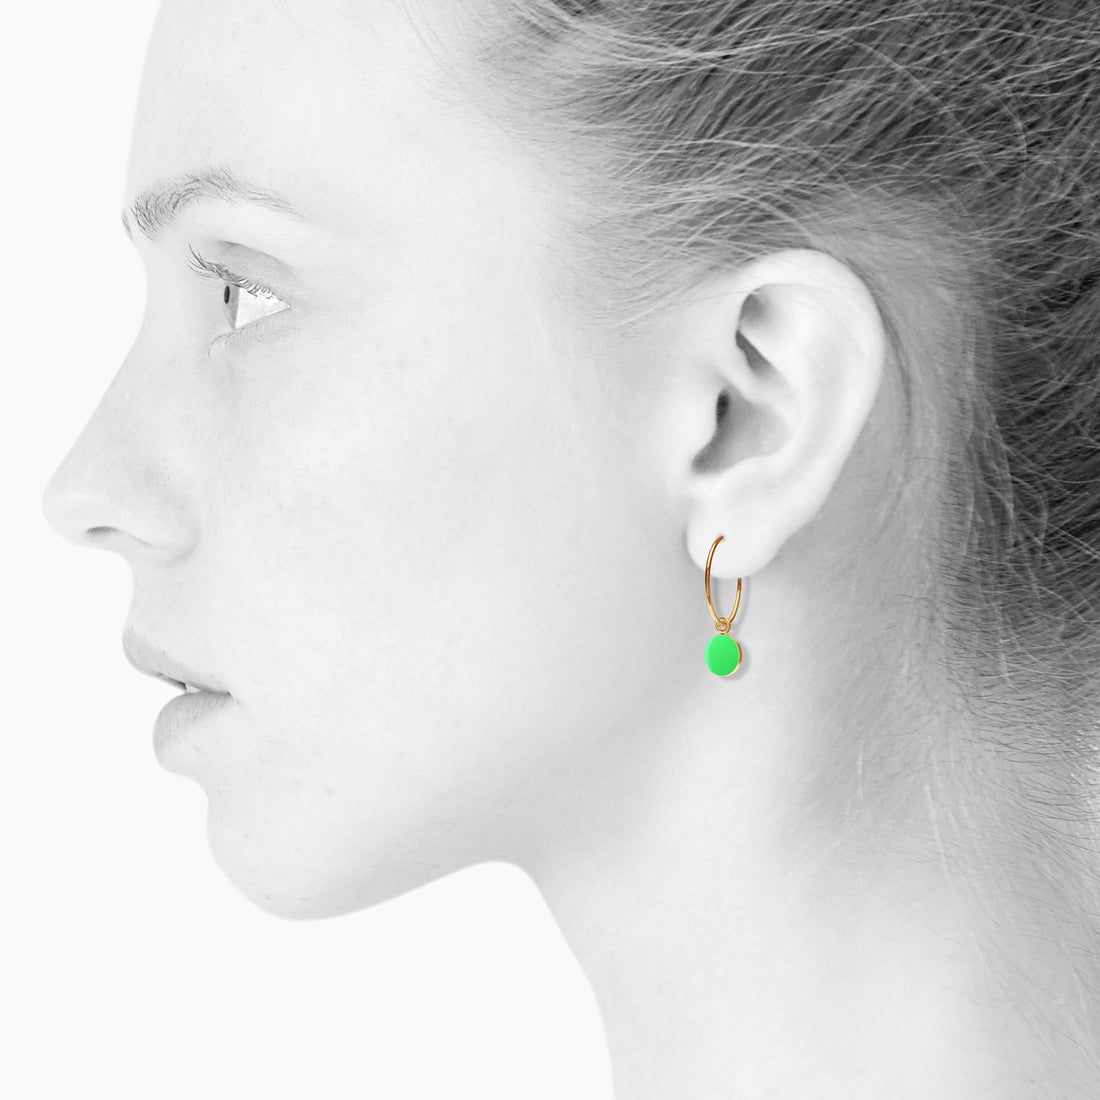 SPOT øreringe, stor - NEON GREEN - SCHERNING smykker